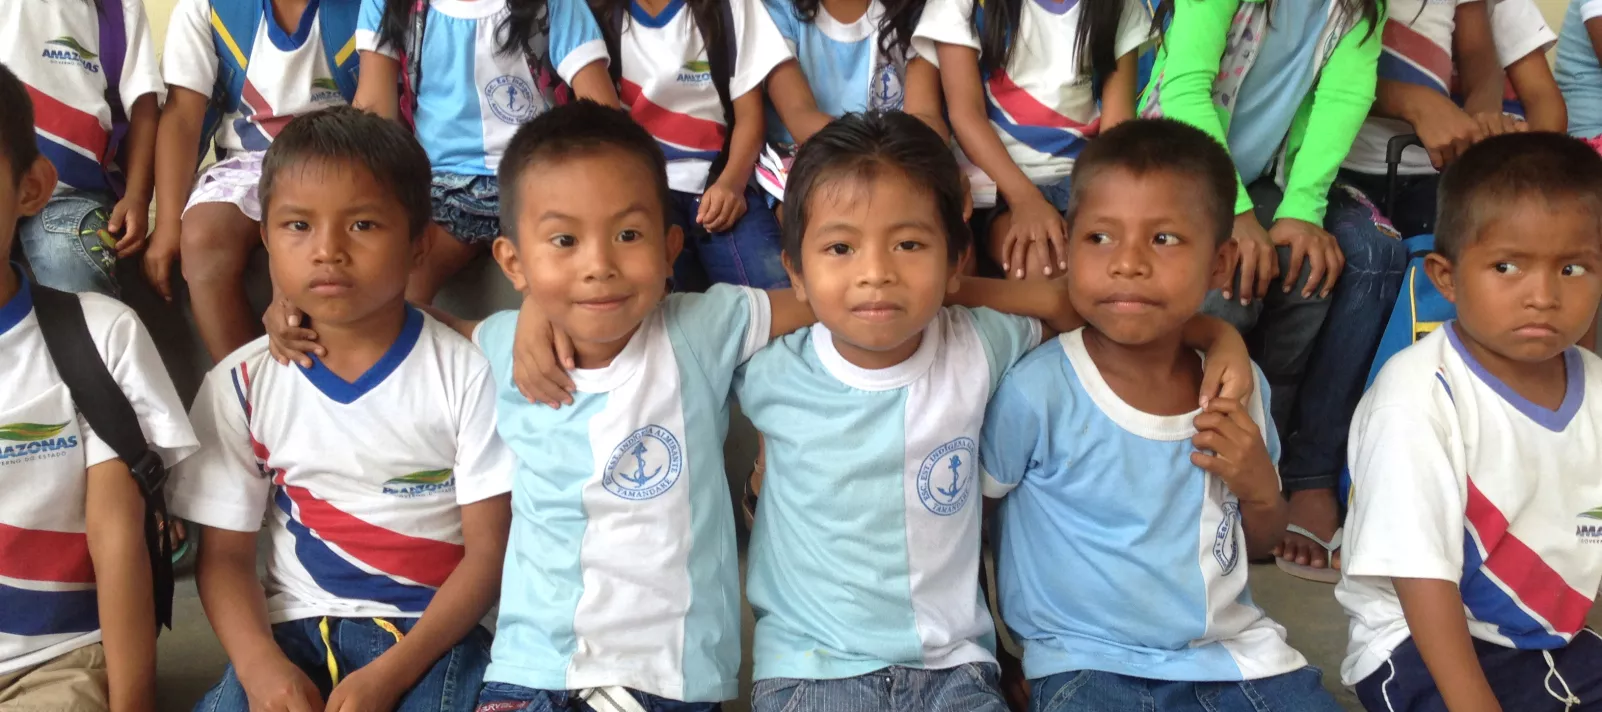 Crianças indígenas posam de uniforme escolar